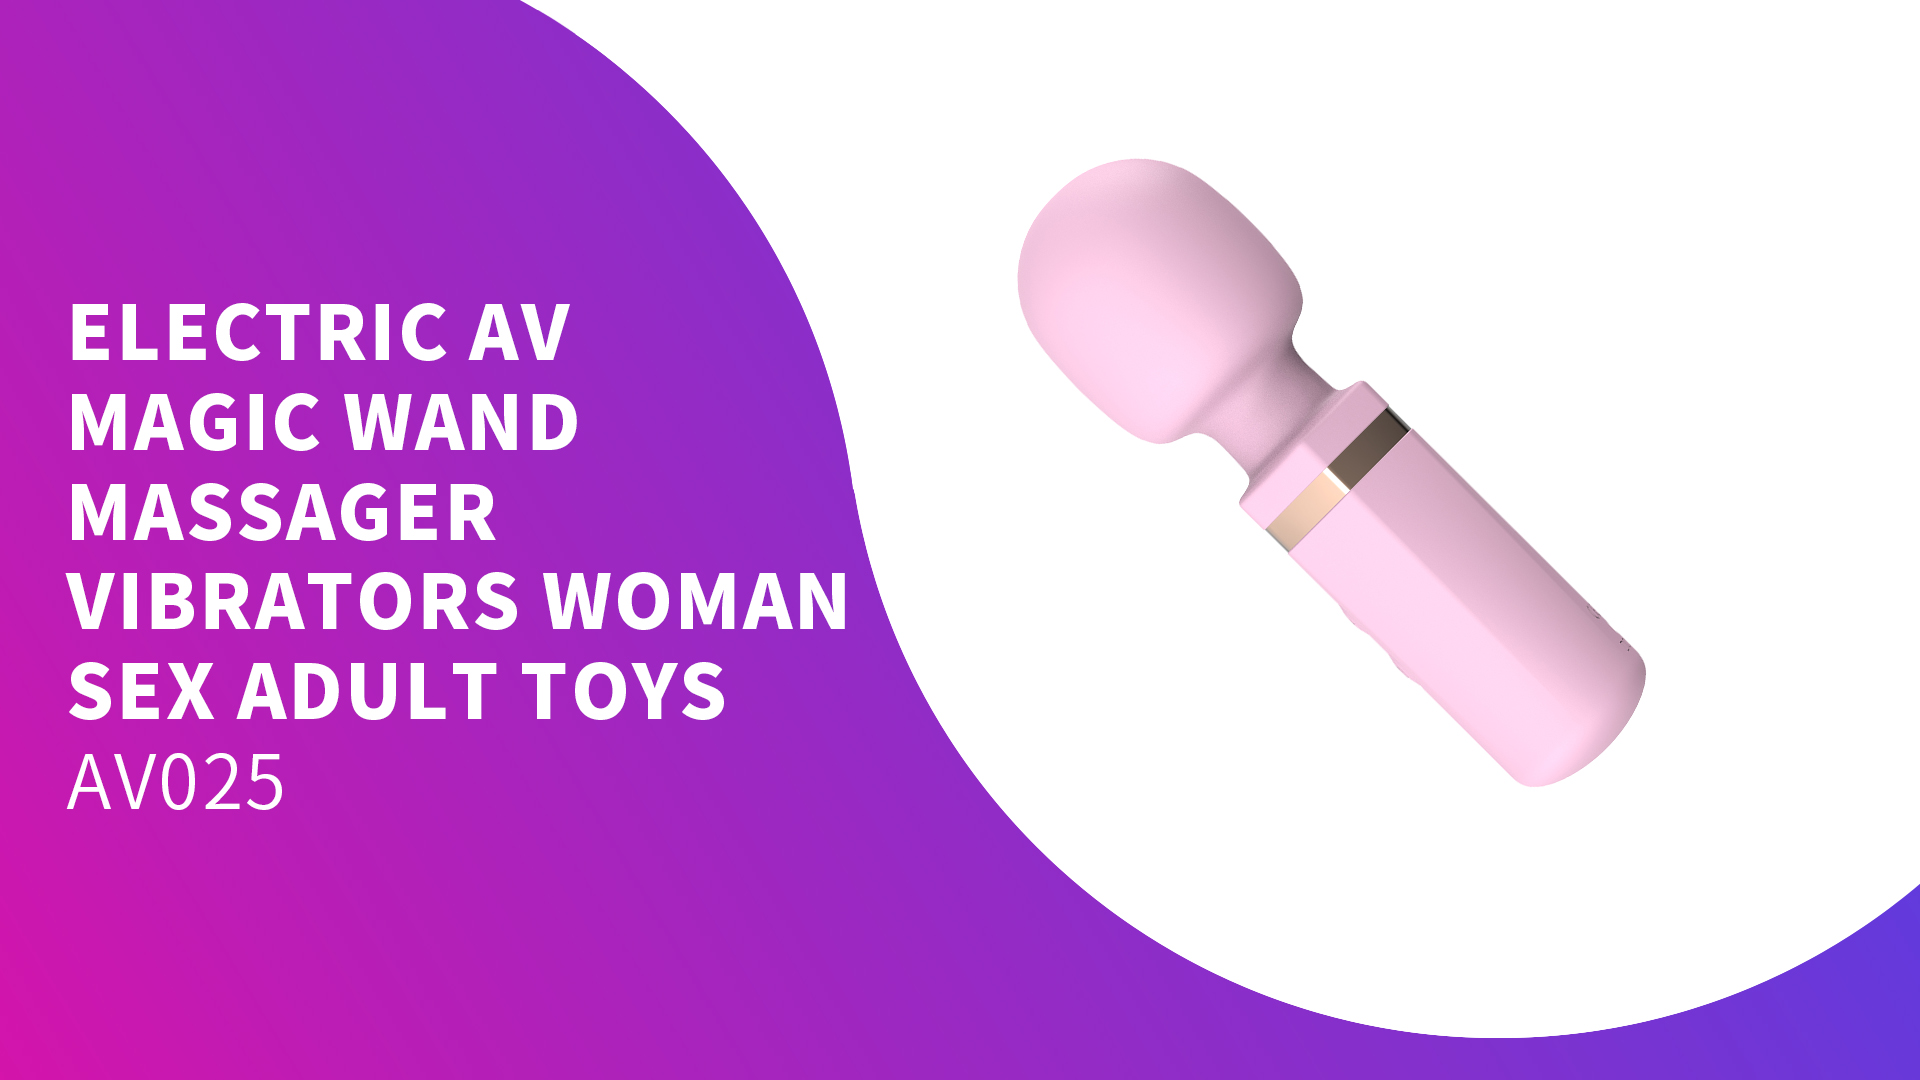 Частная торговая марка Brand New Аккумуляторная электрическая Av Magic Wand Massager Вибраторы Женские секс-игрушки для взрослых с упаковкой AV025